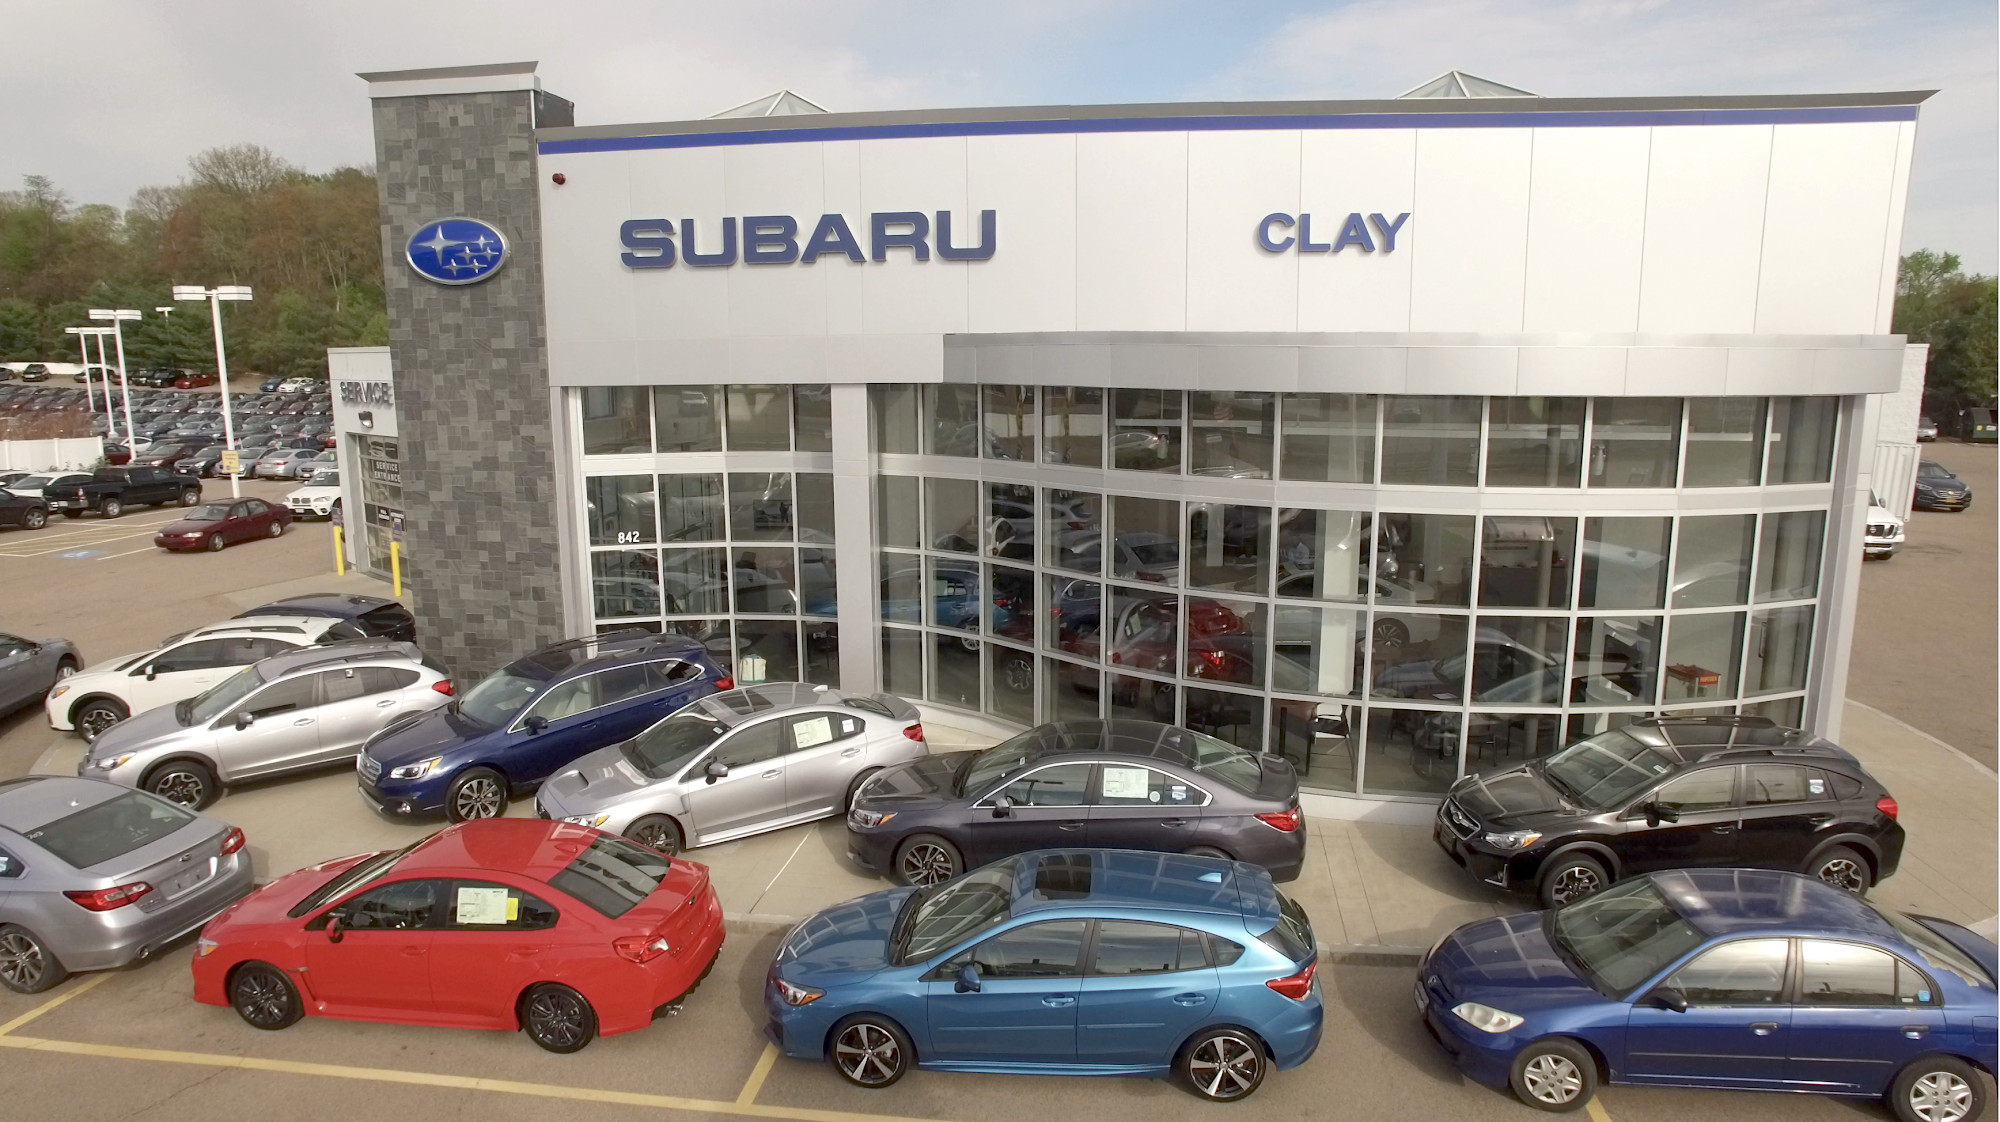 Clay Subaru